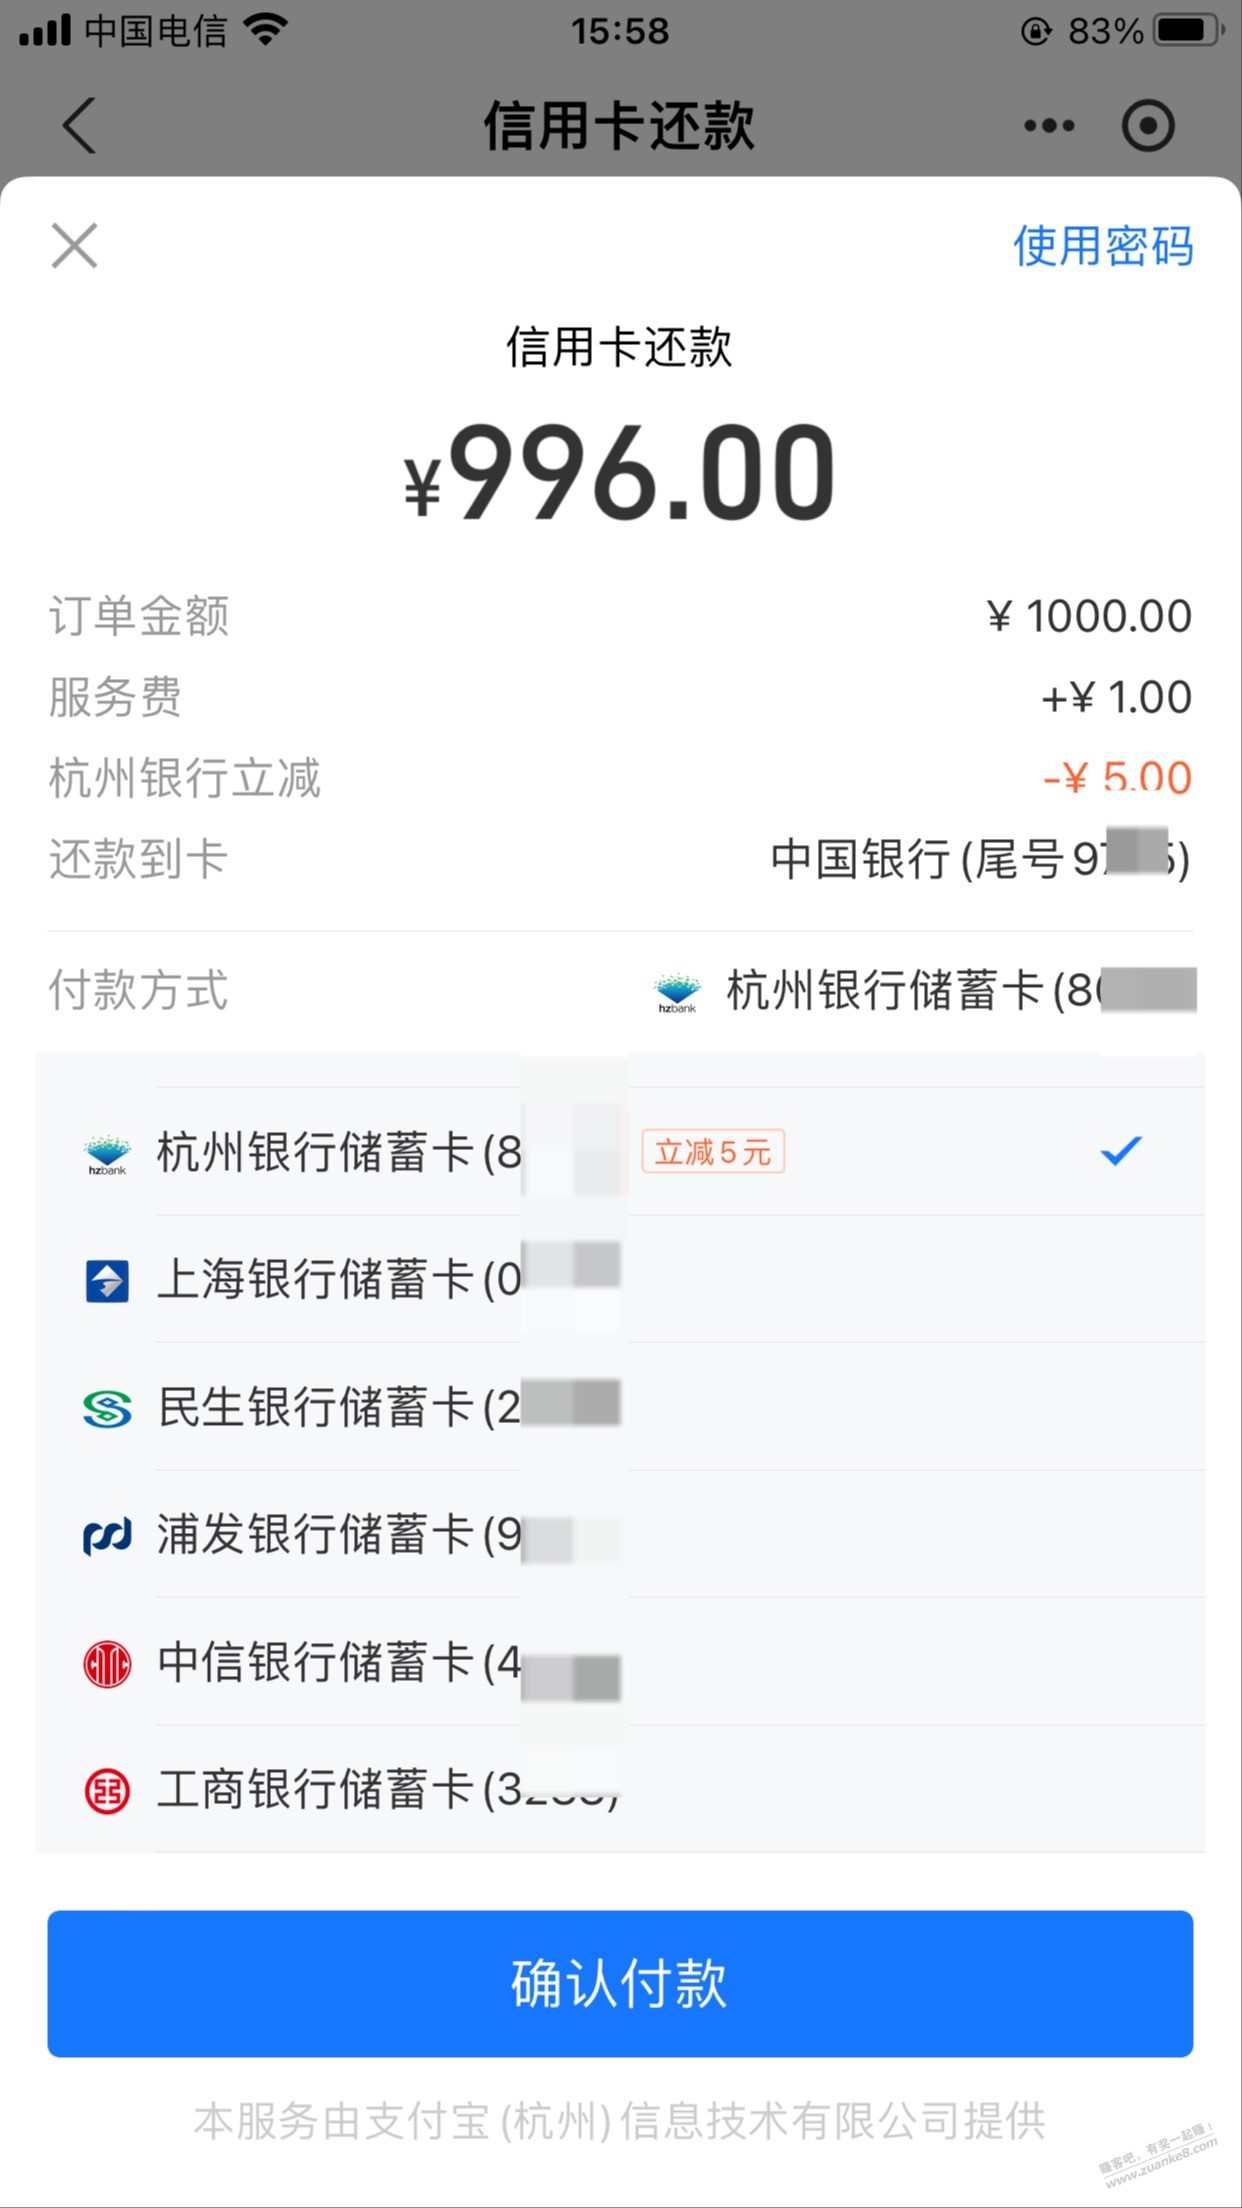 zfb还款-1000-5 杭州储蓄-惠小助(52huixz.com)